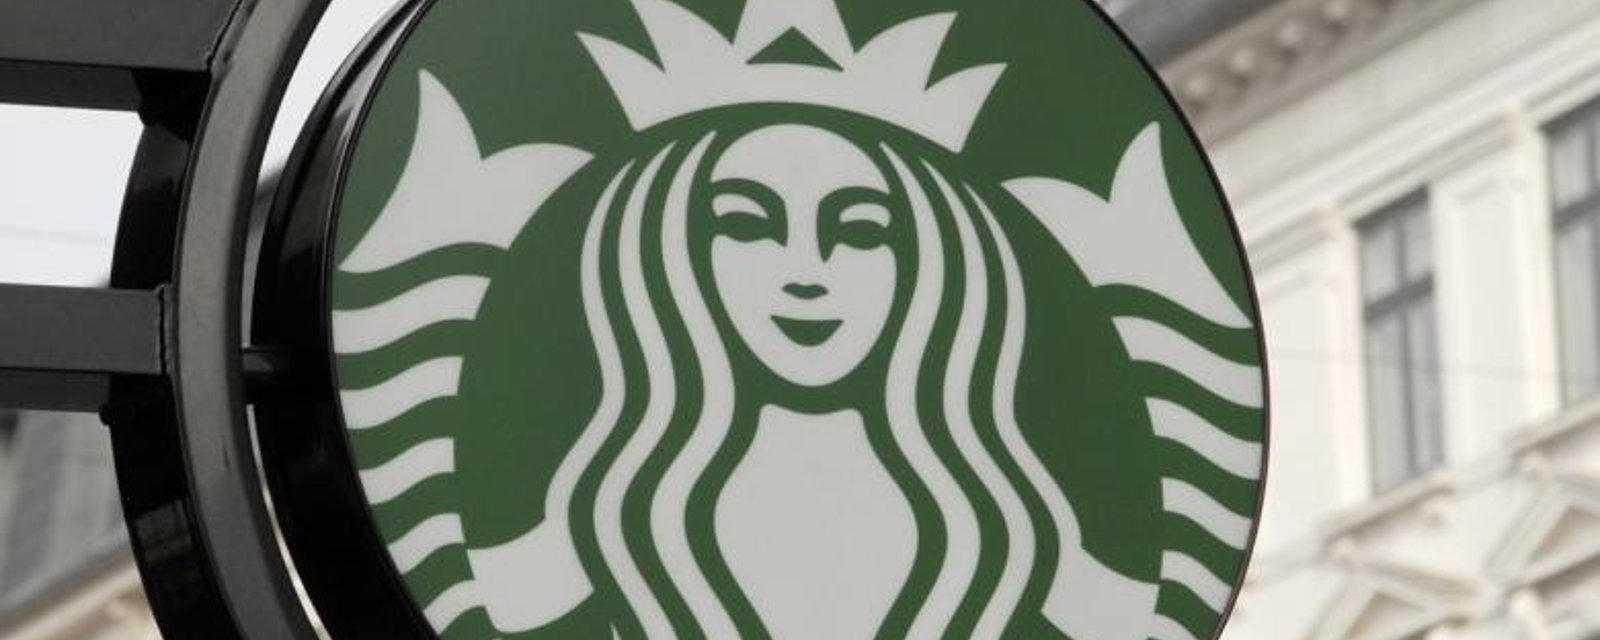 Starbucks donnera ses produits non-vendus aux personnes qui sont dans le besoin.